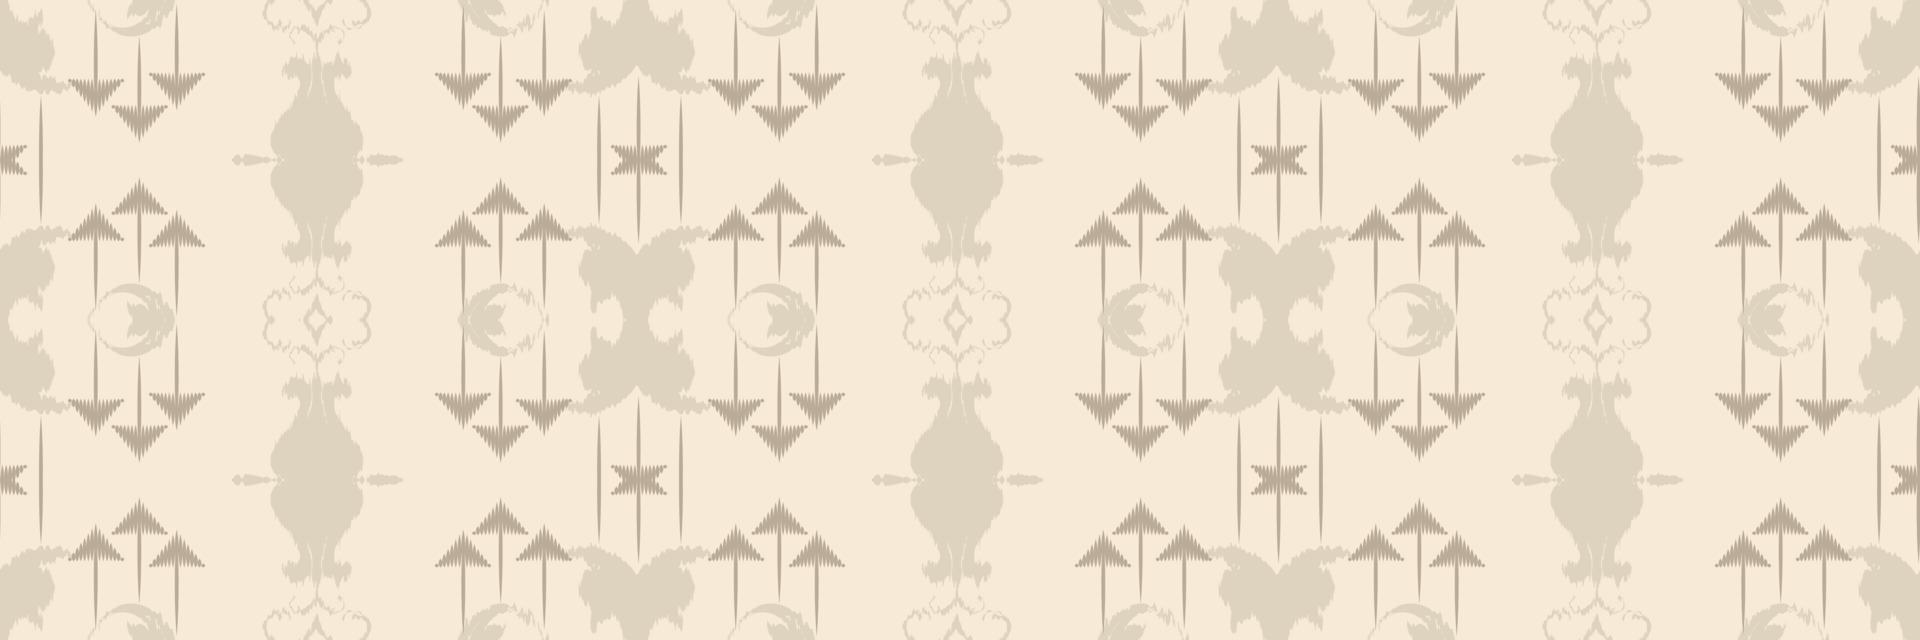 batik textil ikkat o ikat diseño de patrones sin fisuras diseño vectorial digital para imprimir saree kurti borneo borde de tela símbolos de pincel muestras ropa de fiesta vector